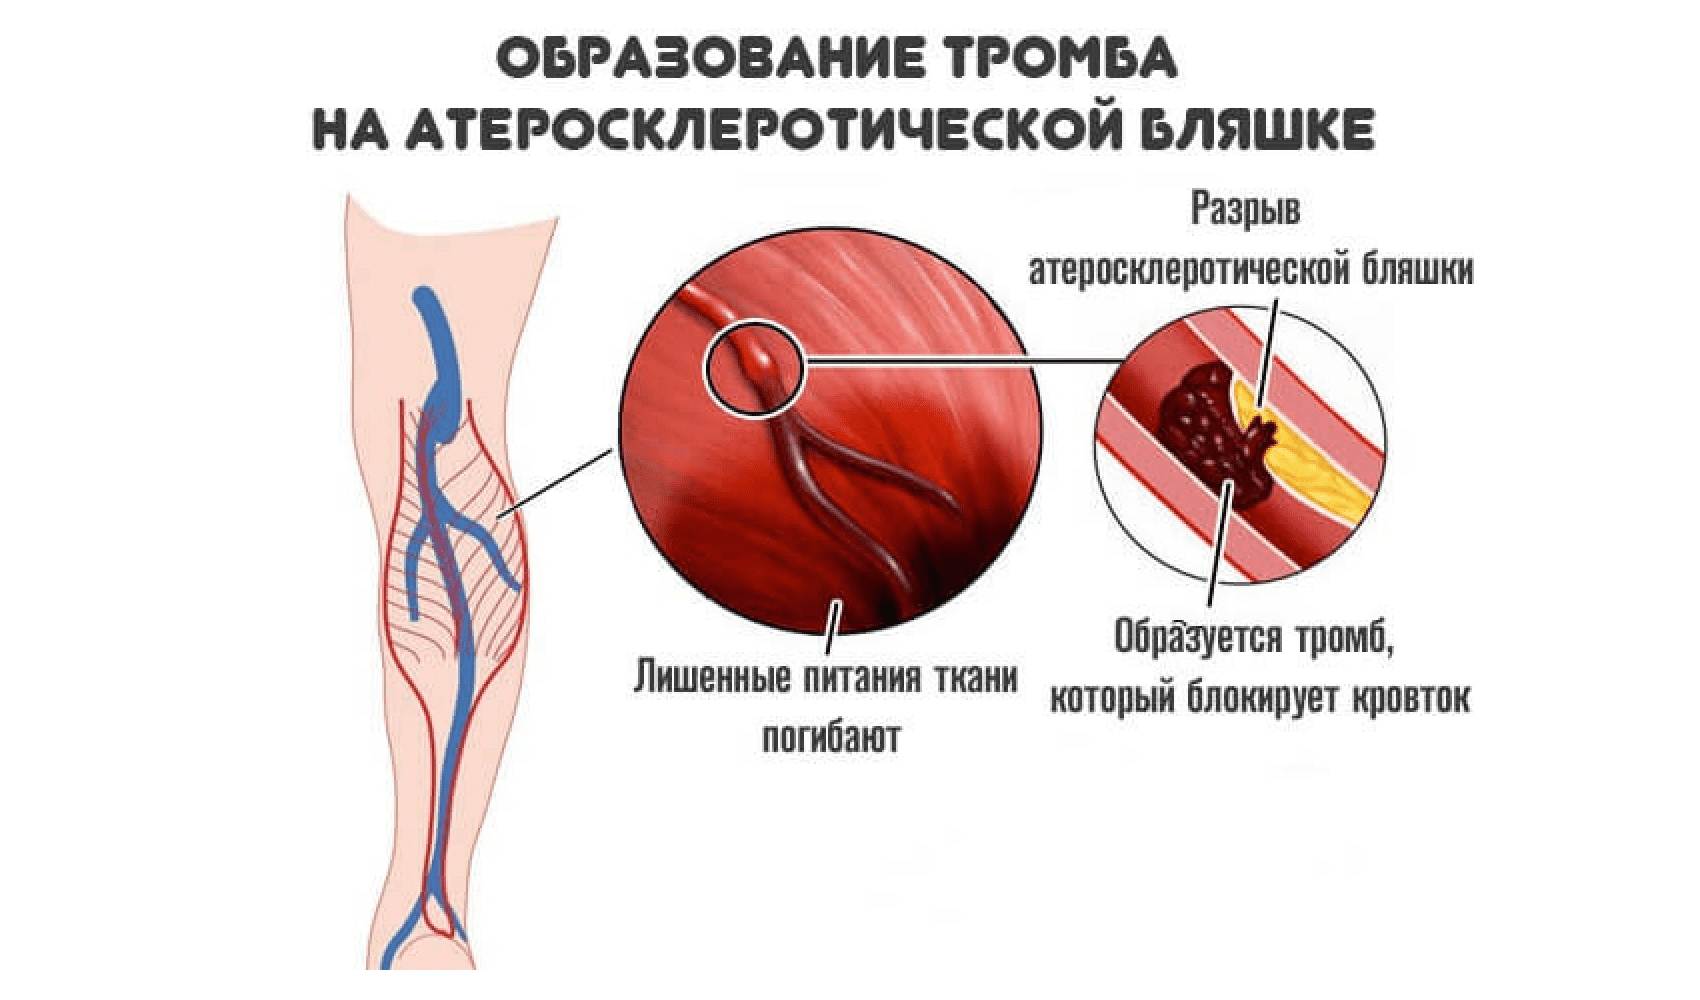 Тромбы в сосудах причины. Образование тромбов в артериях. Атеросклеротическая бляшка и тромб.